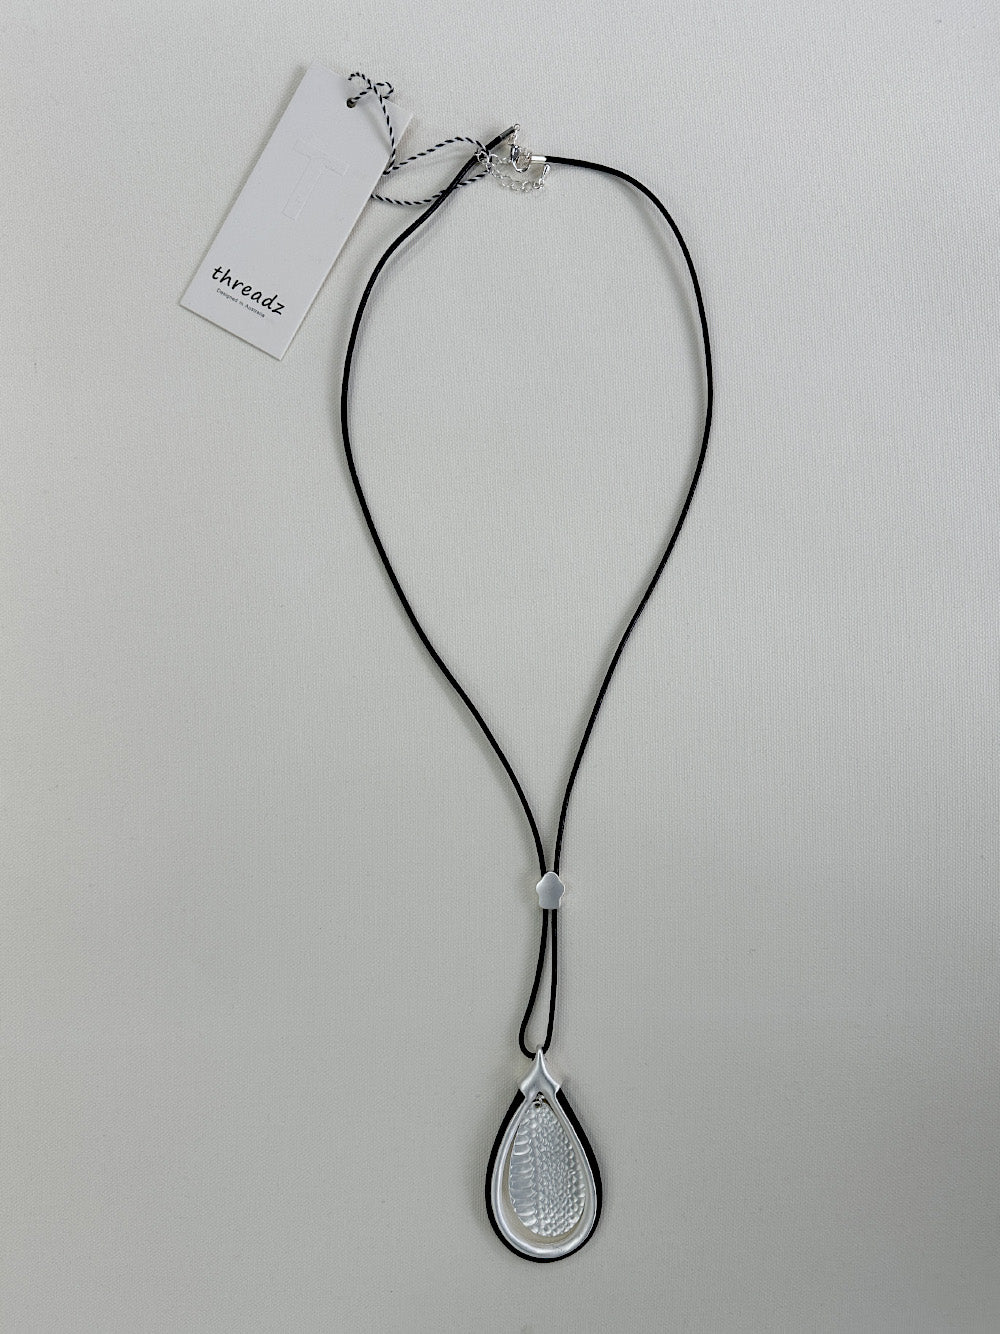 Teardrop Pendant Necklace - Silver